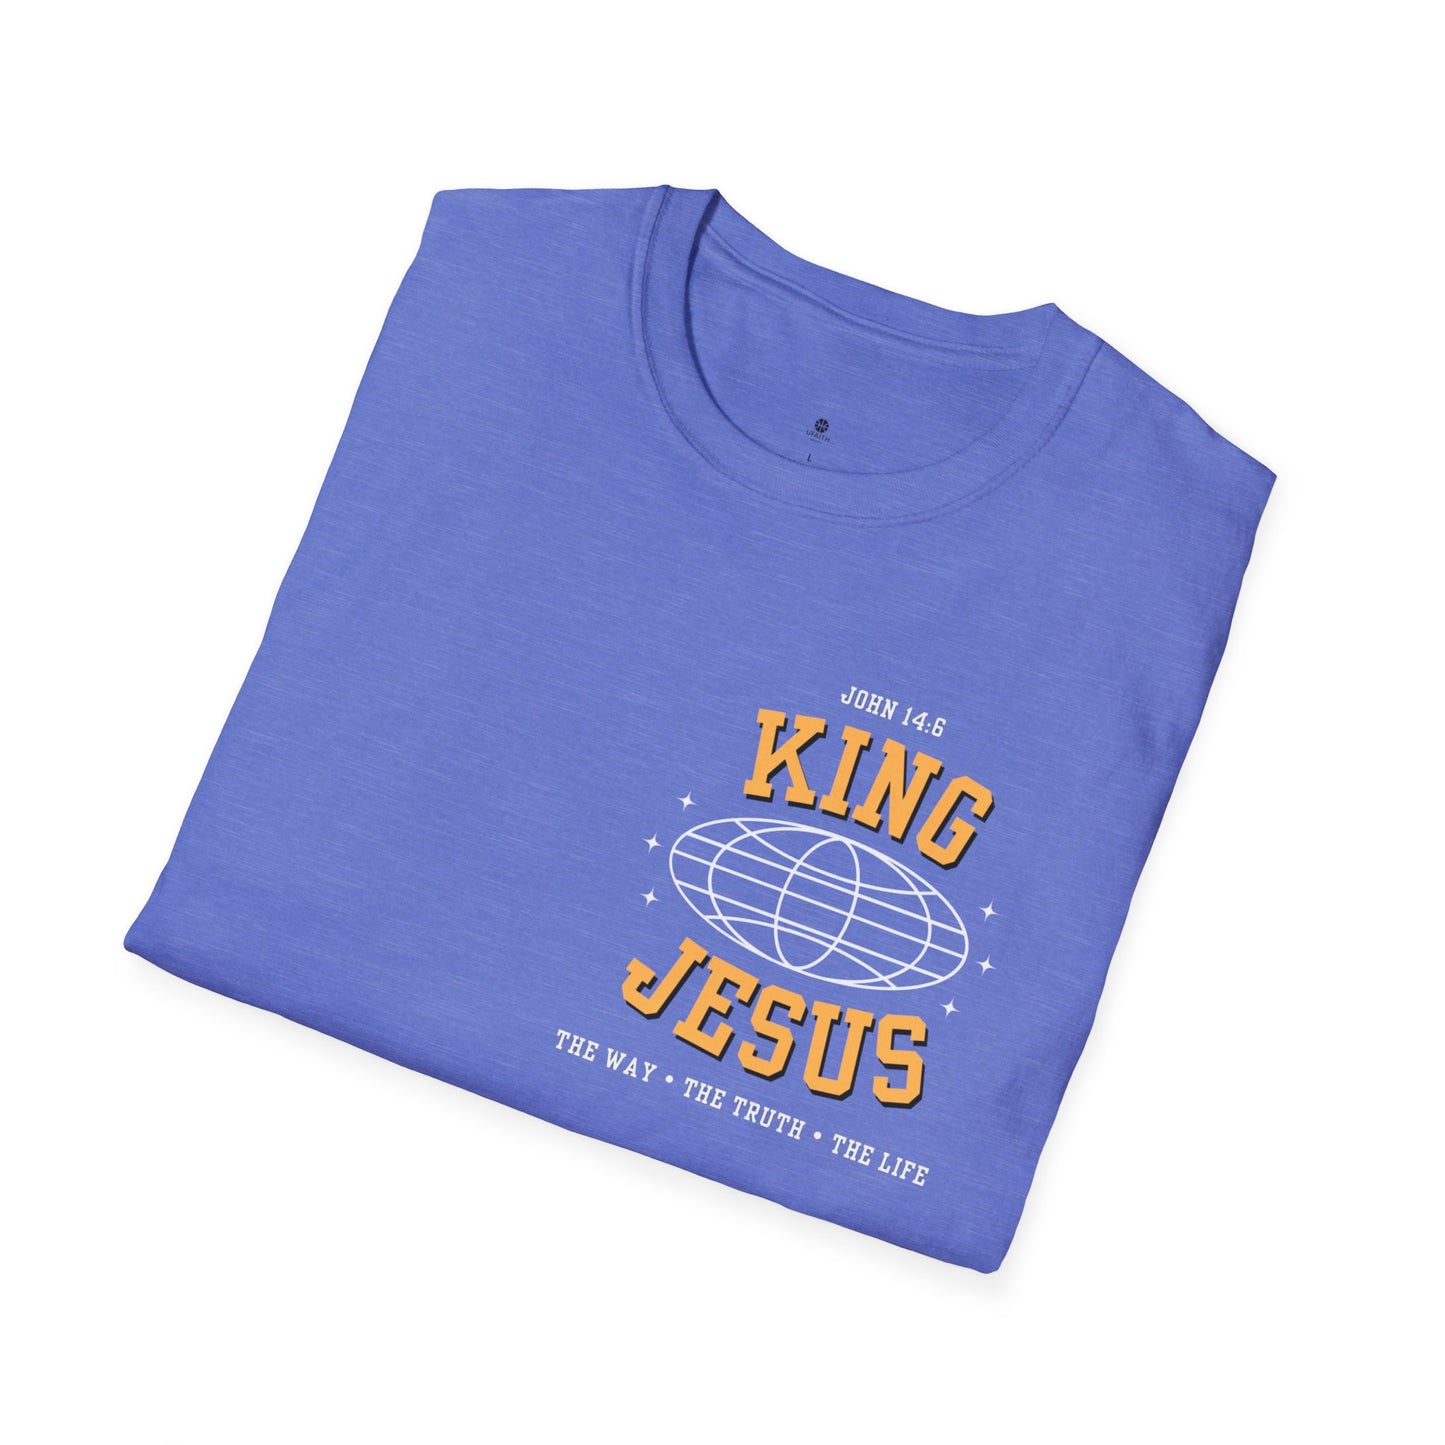 King Jesus T-Shirt